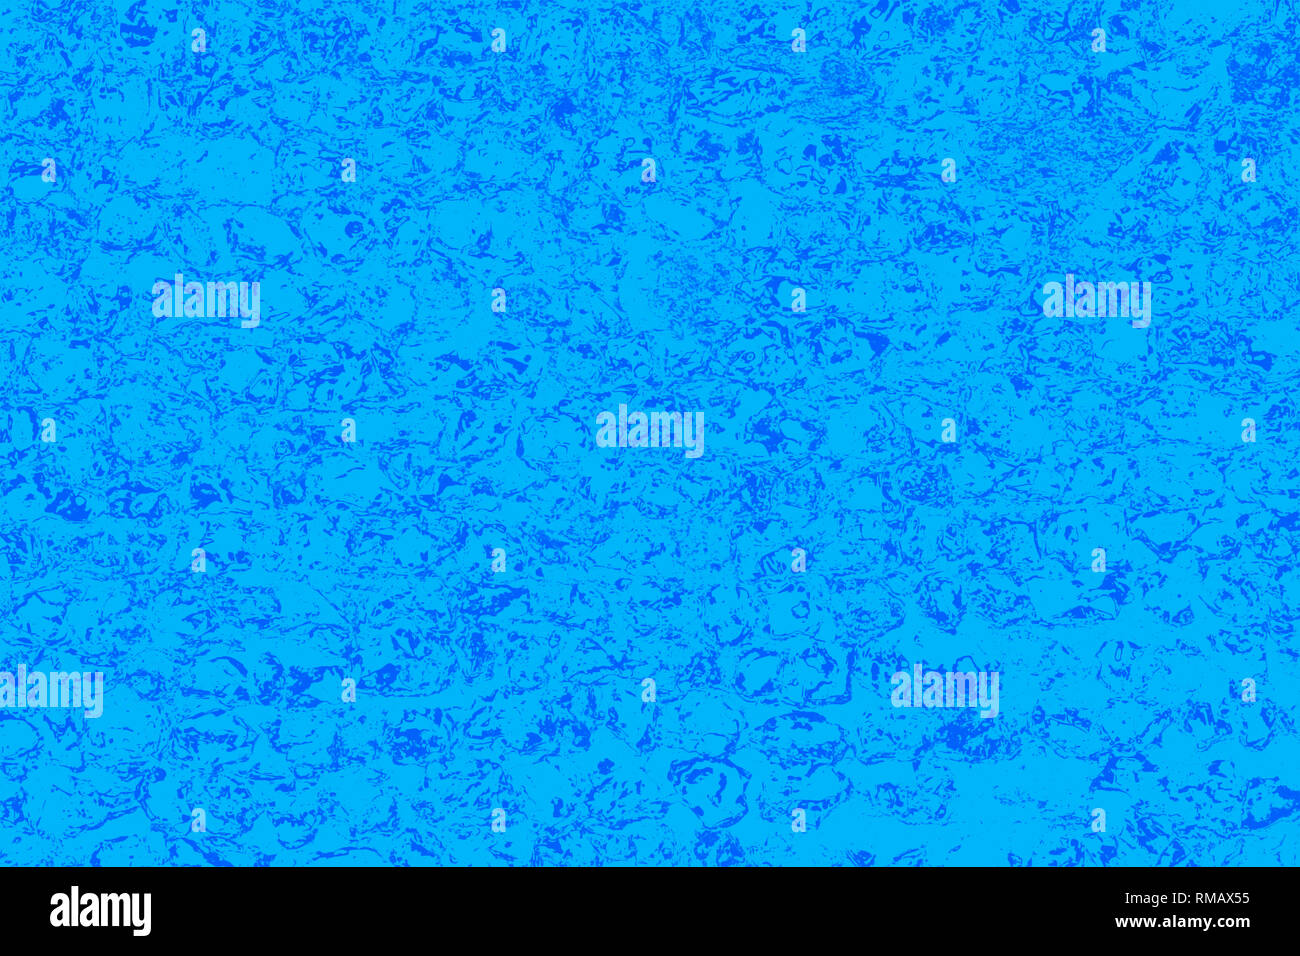 Patrón de fondo abstracto azul realmente aleatorios y patrones detallados. Foto de stock